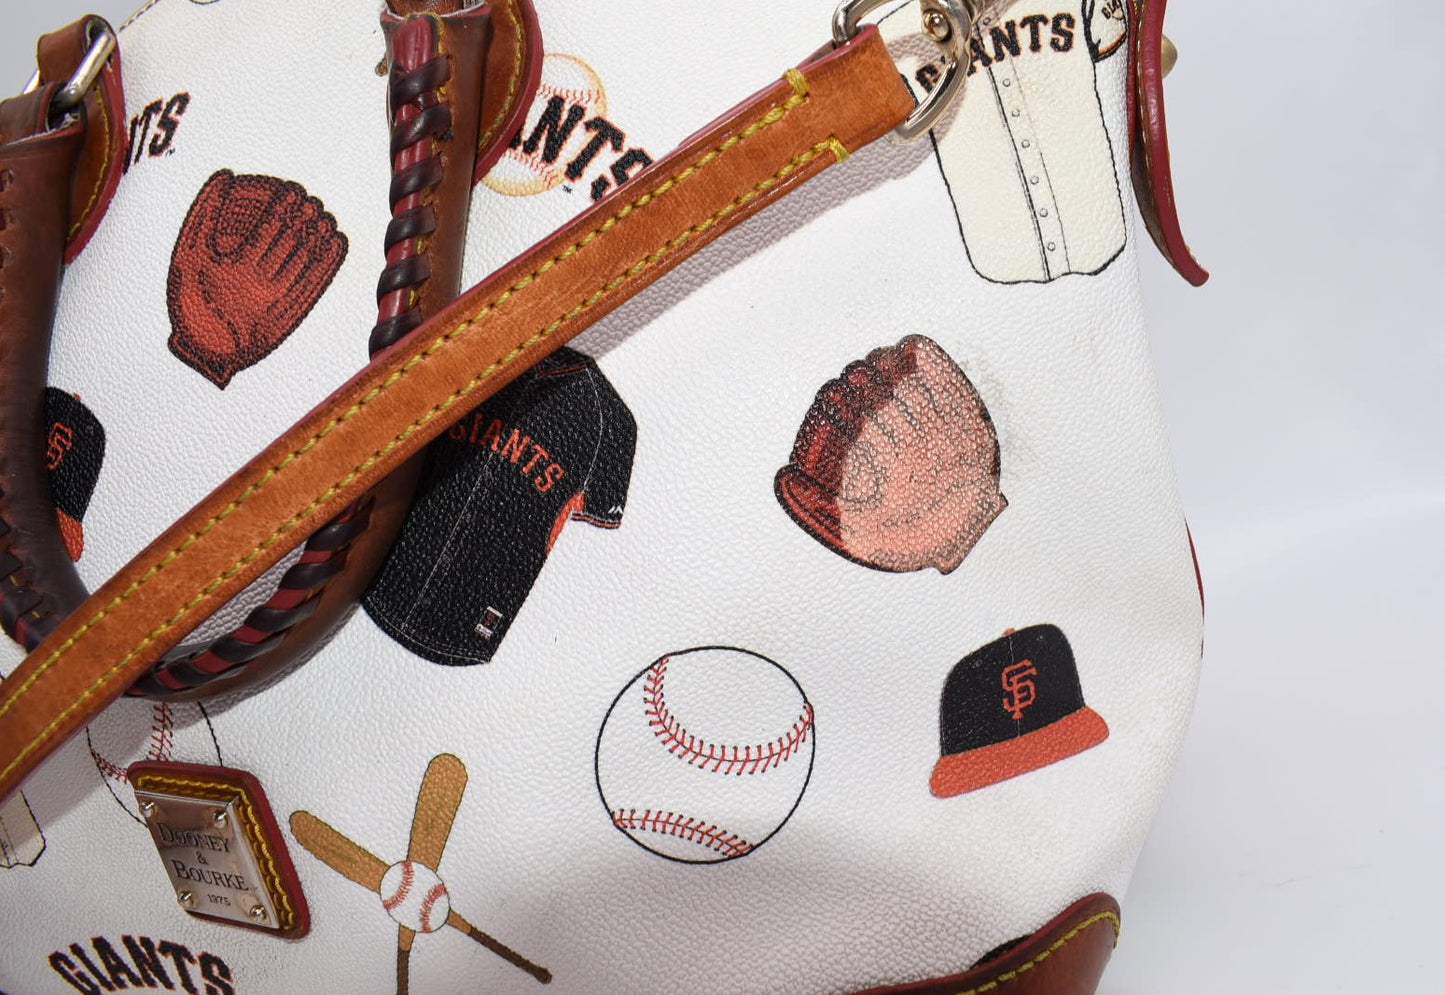 Dooney & Bourke MLB Giants Dome Satchel Bag